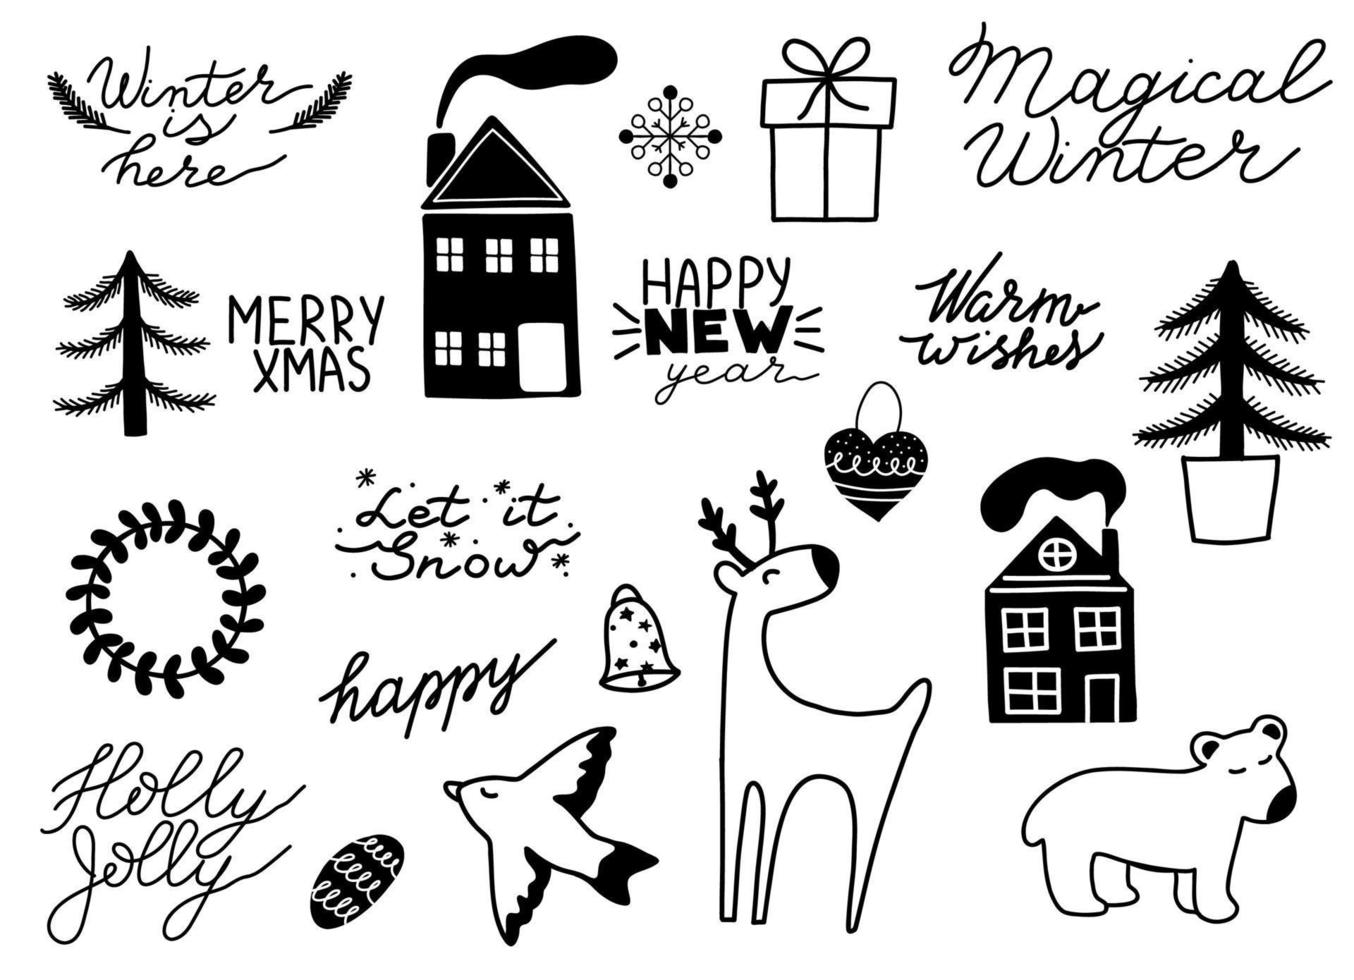 raccolta di elementi scandinavi di buon natale e felice anno nuovo. frasi scritte disegnate a mano. illustrazione vettoriale